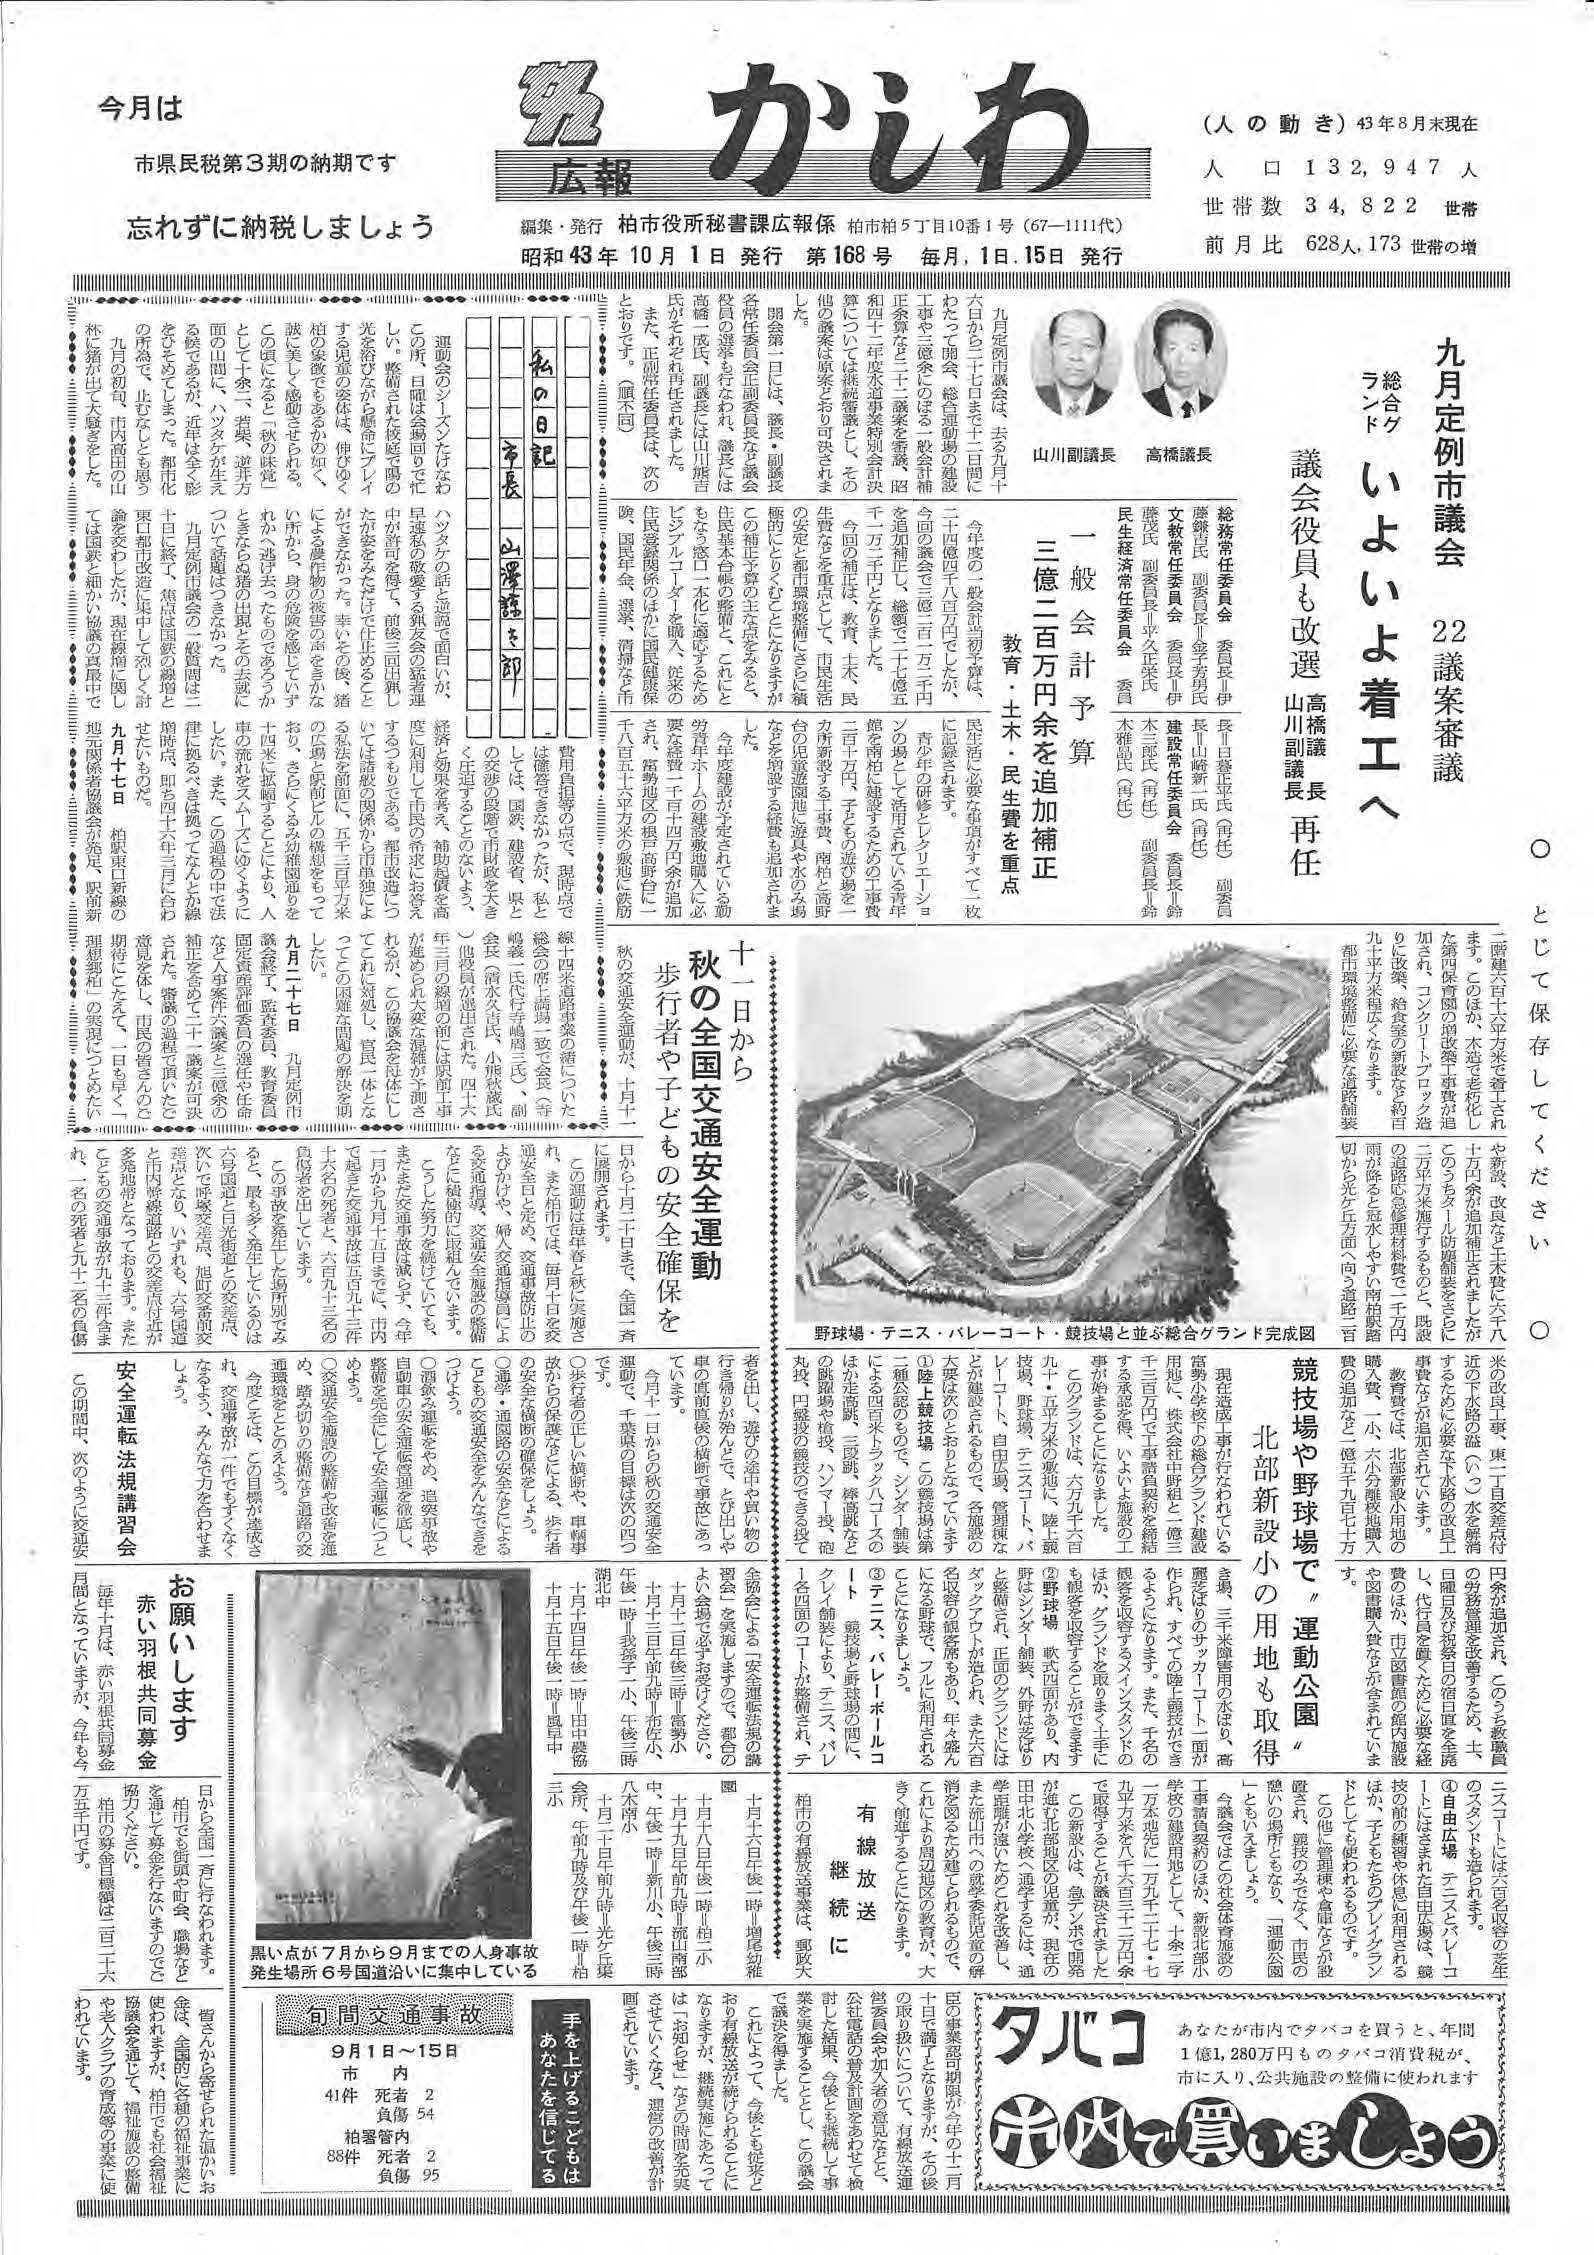 広報かしわ　昭和43年10月1日発行　168号